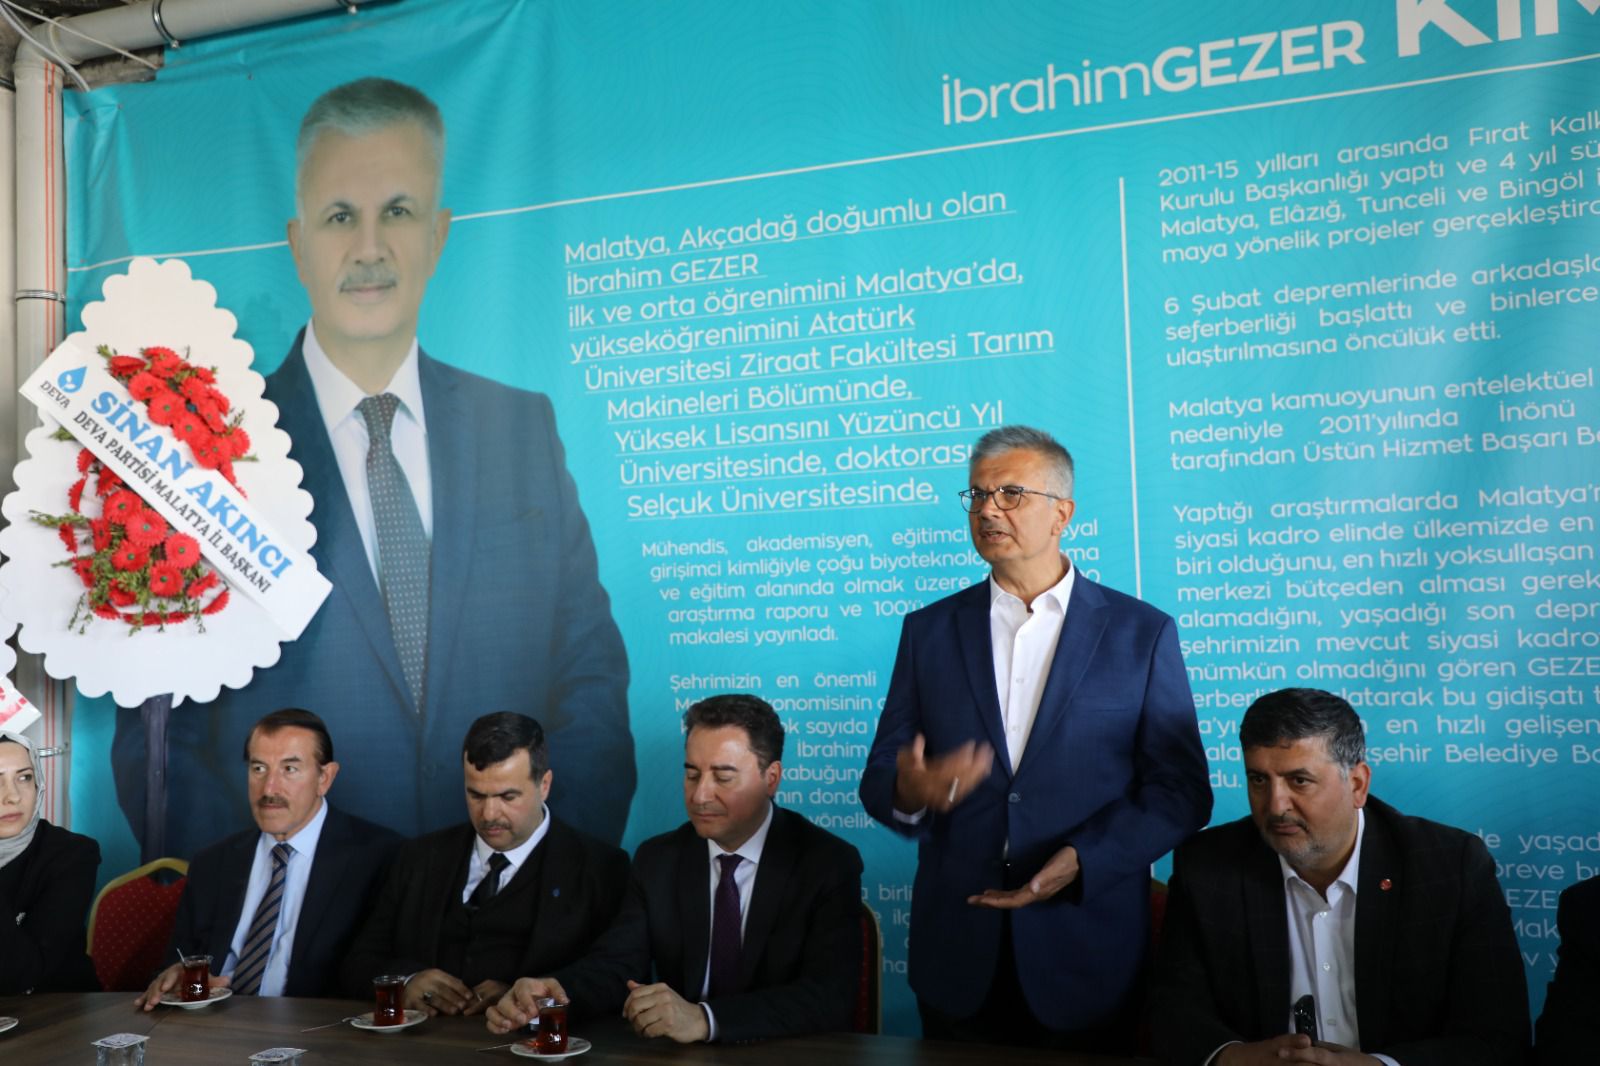 Deva Partisi Genel Başkanı Ali Babacan’dan Büyükşehir Bağımsız Belediye Başkan Adayı Gezer’e Destek Ziyareti 